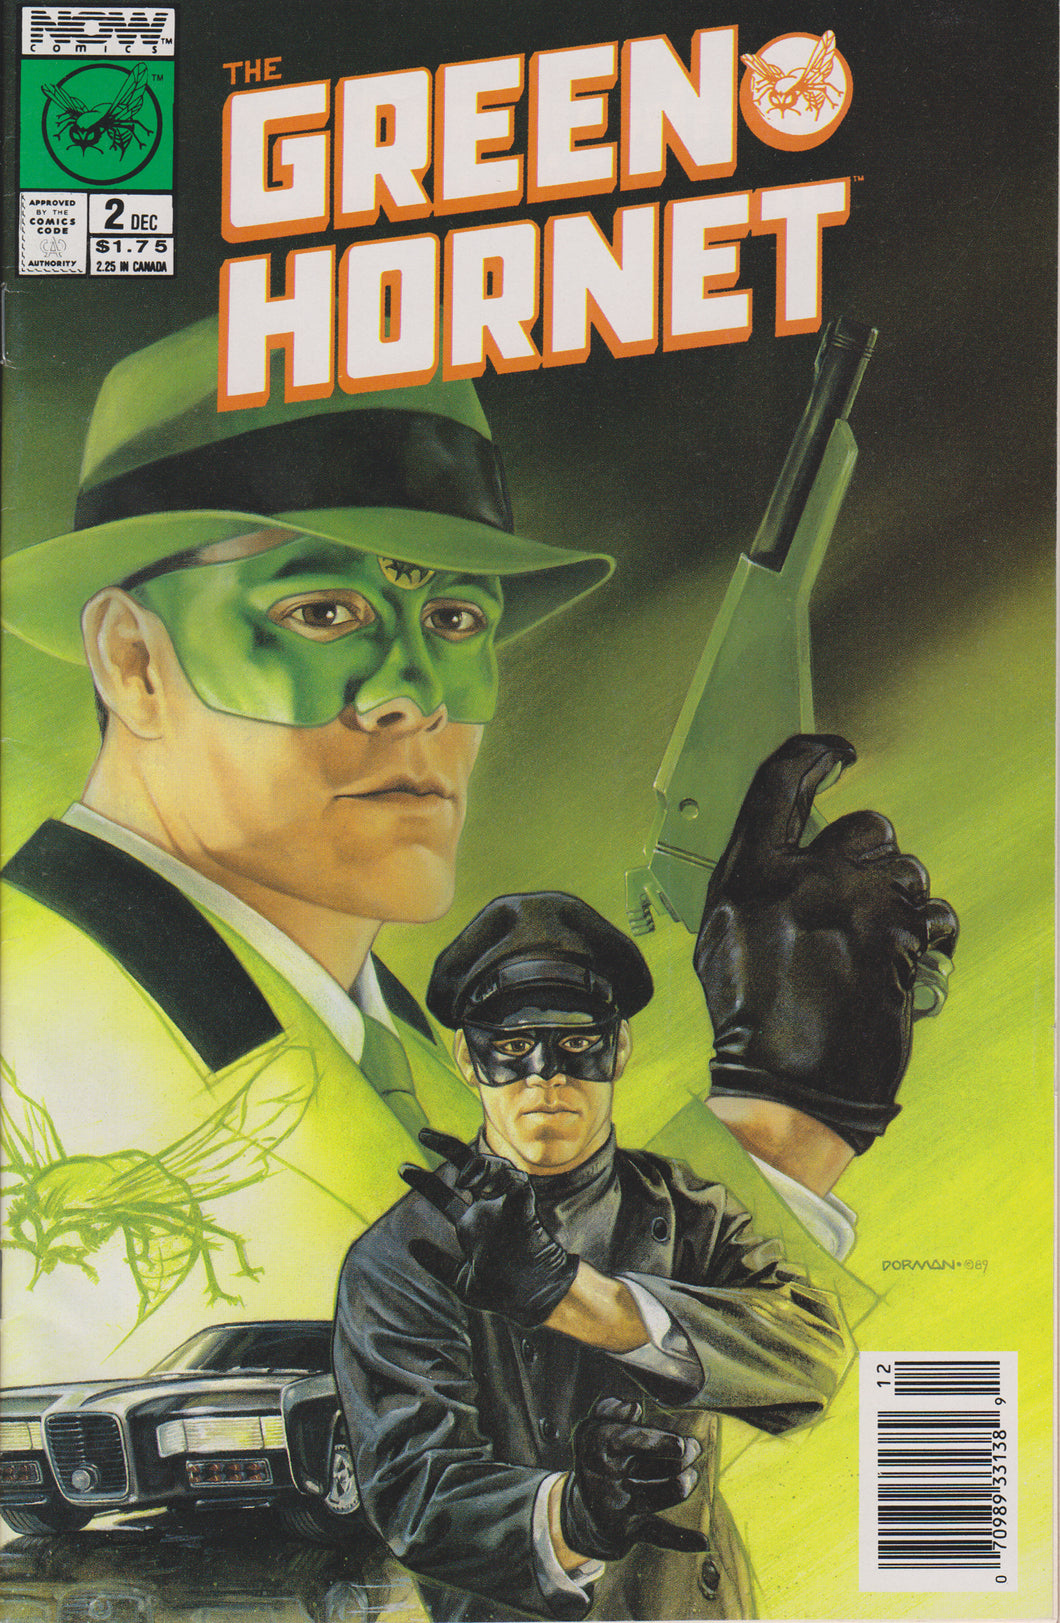 GREEN HORNET #2 COMIC BOOK ~ Now Comics